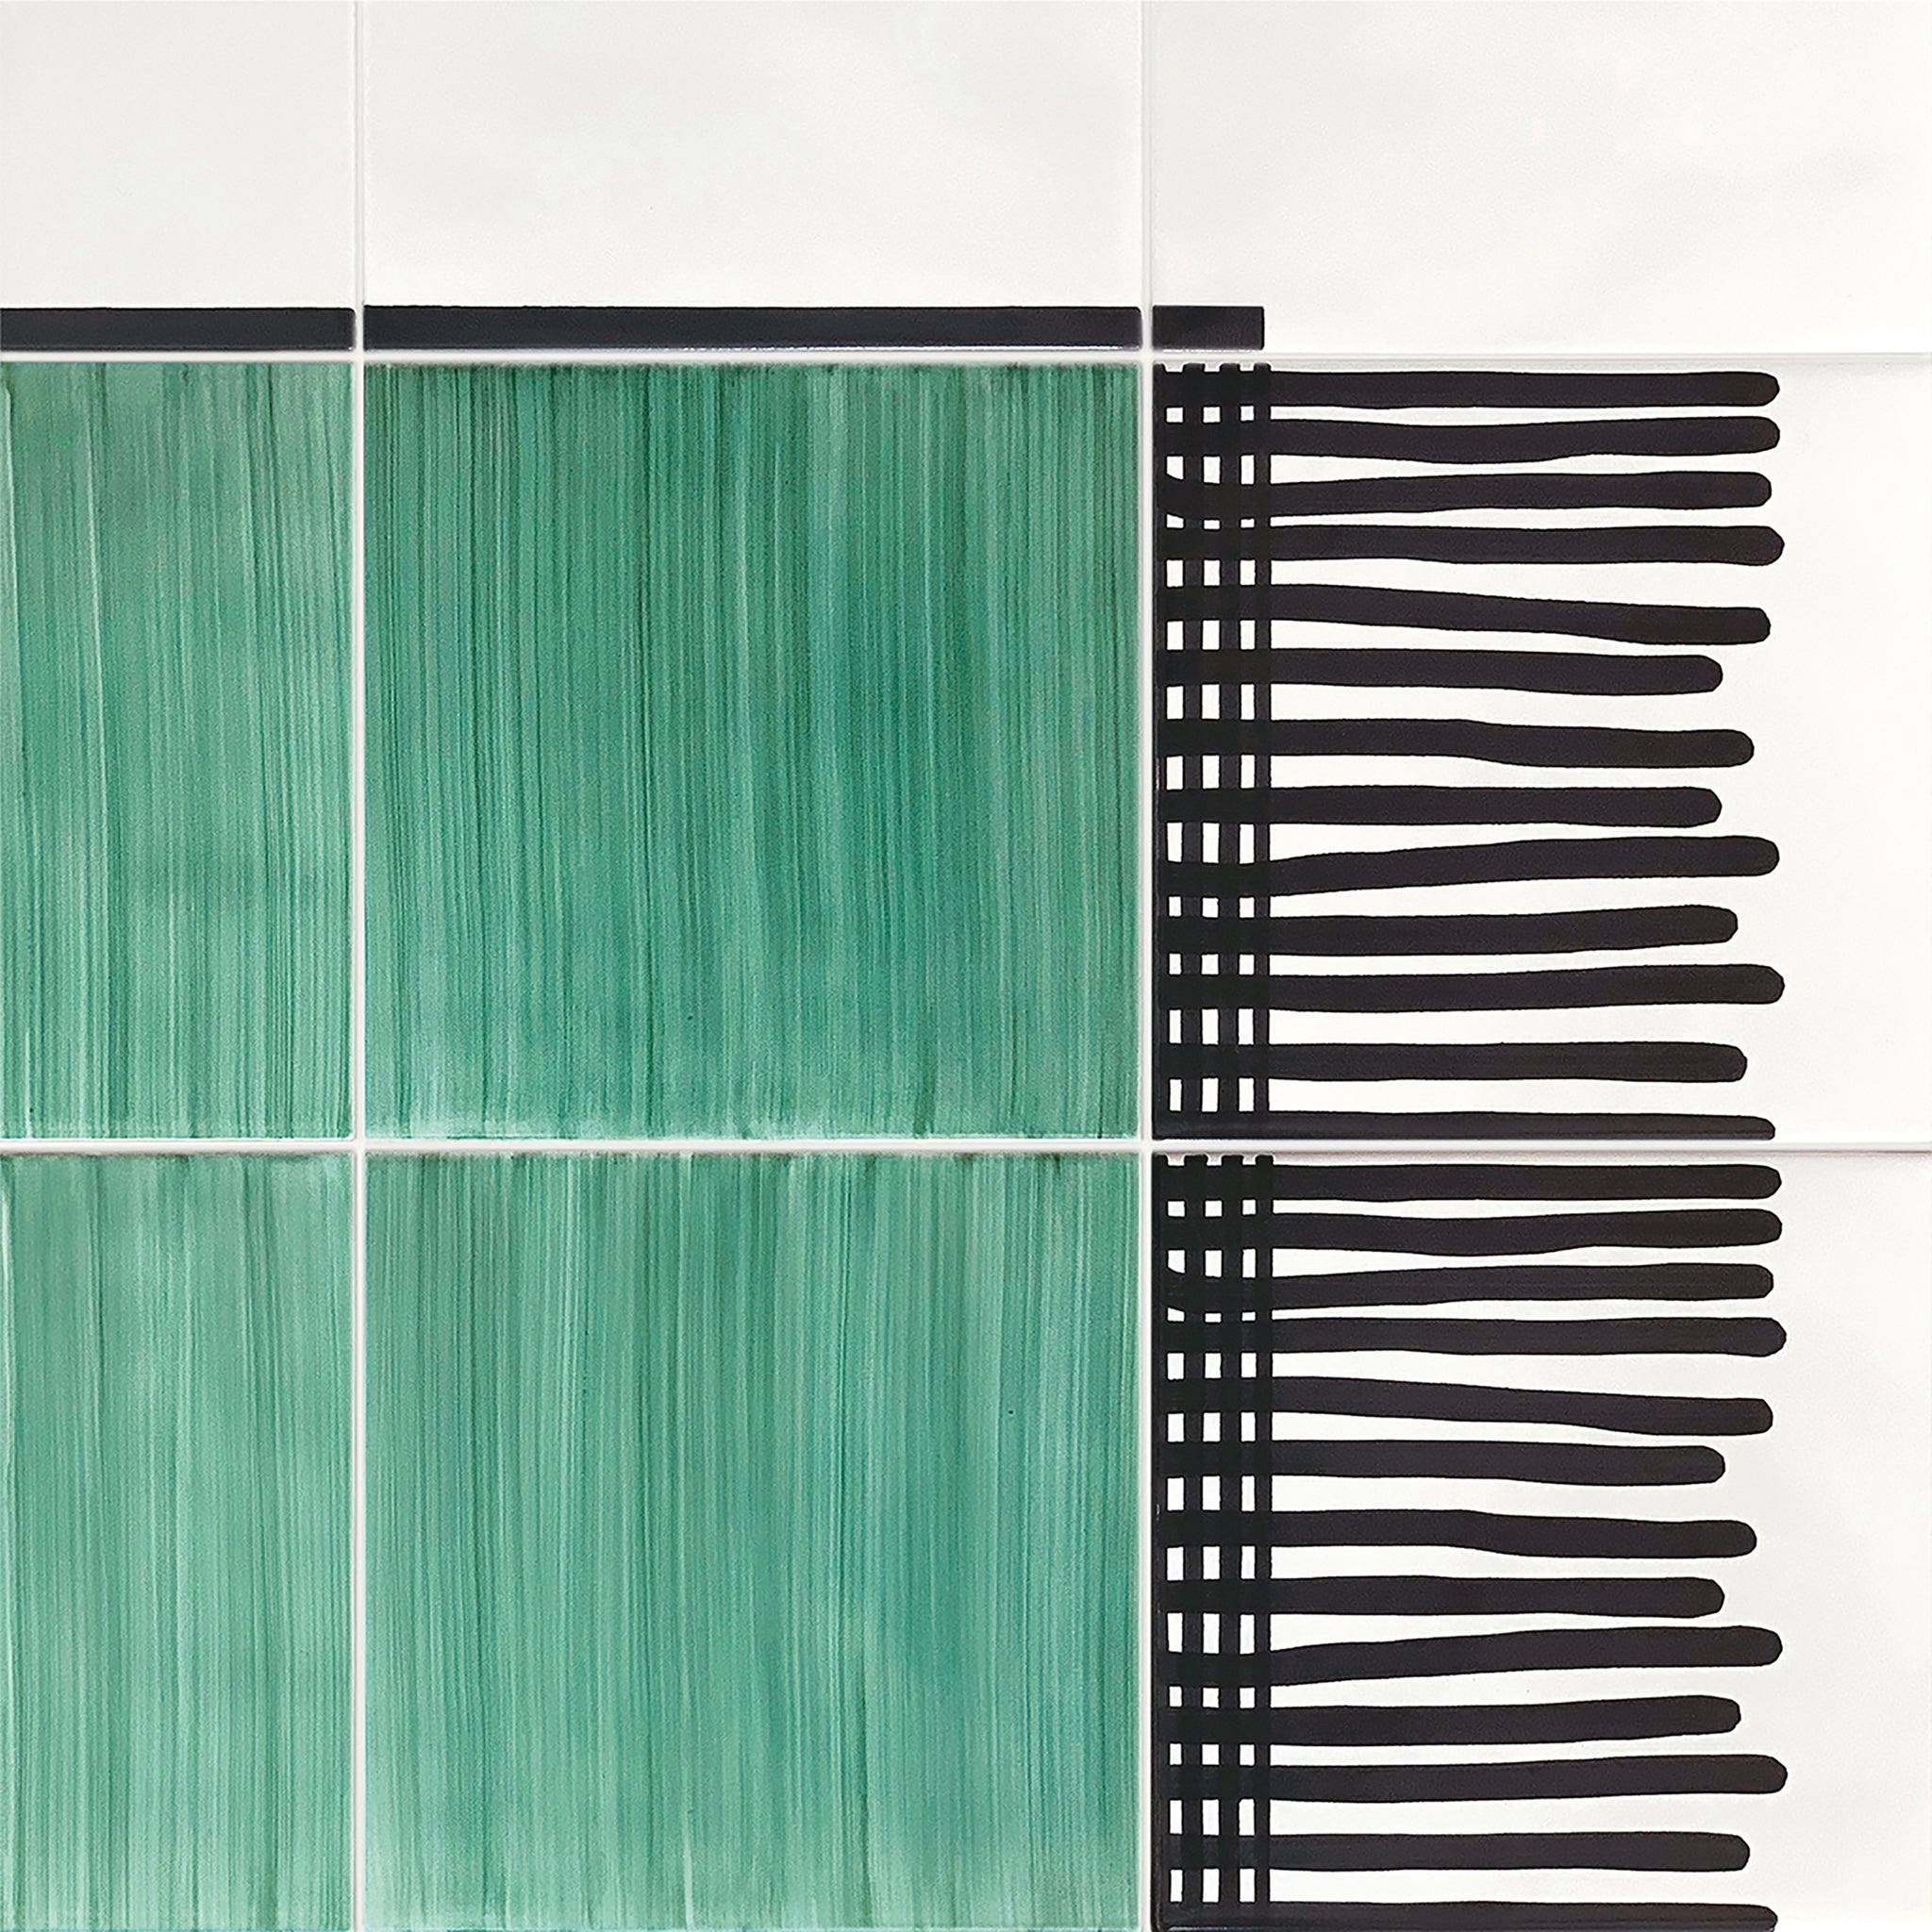 Carpet Total Green Ceramic Composition by Giuliano Andrea dell’Uva 120 X 80 - Alternative view 2